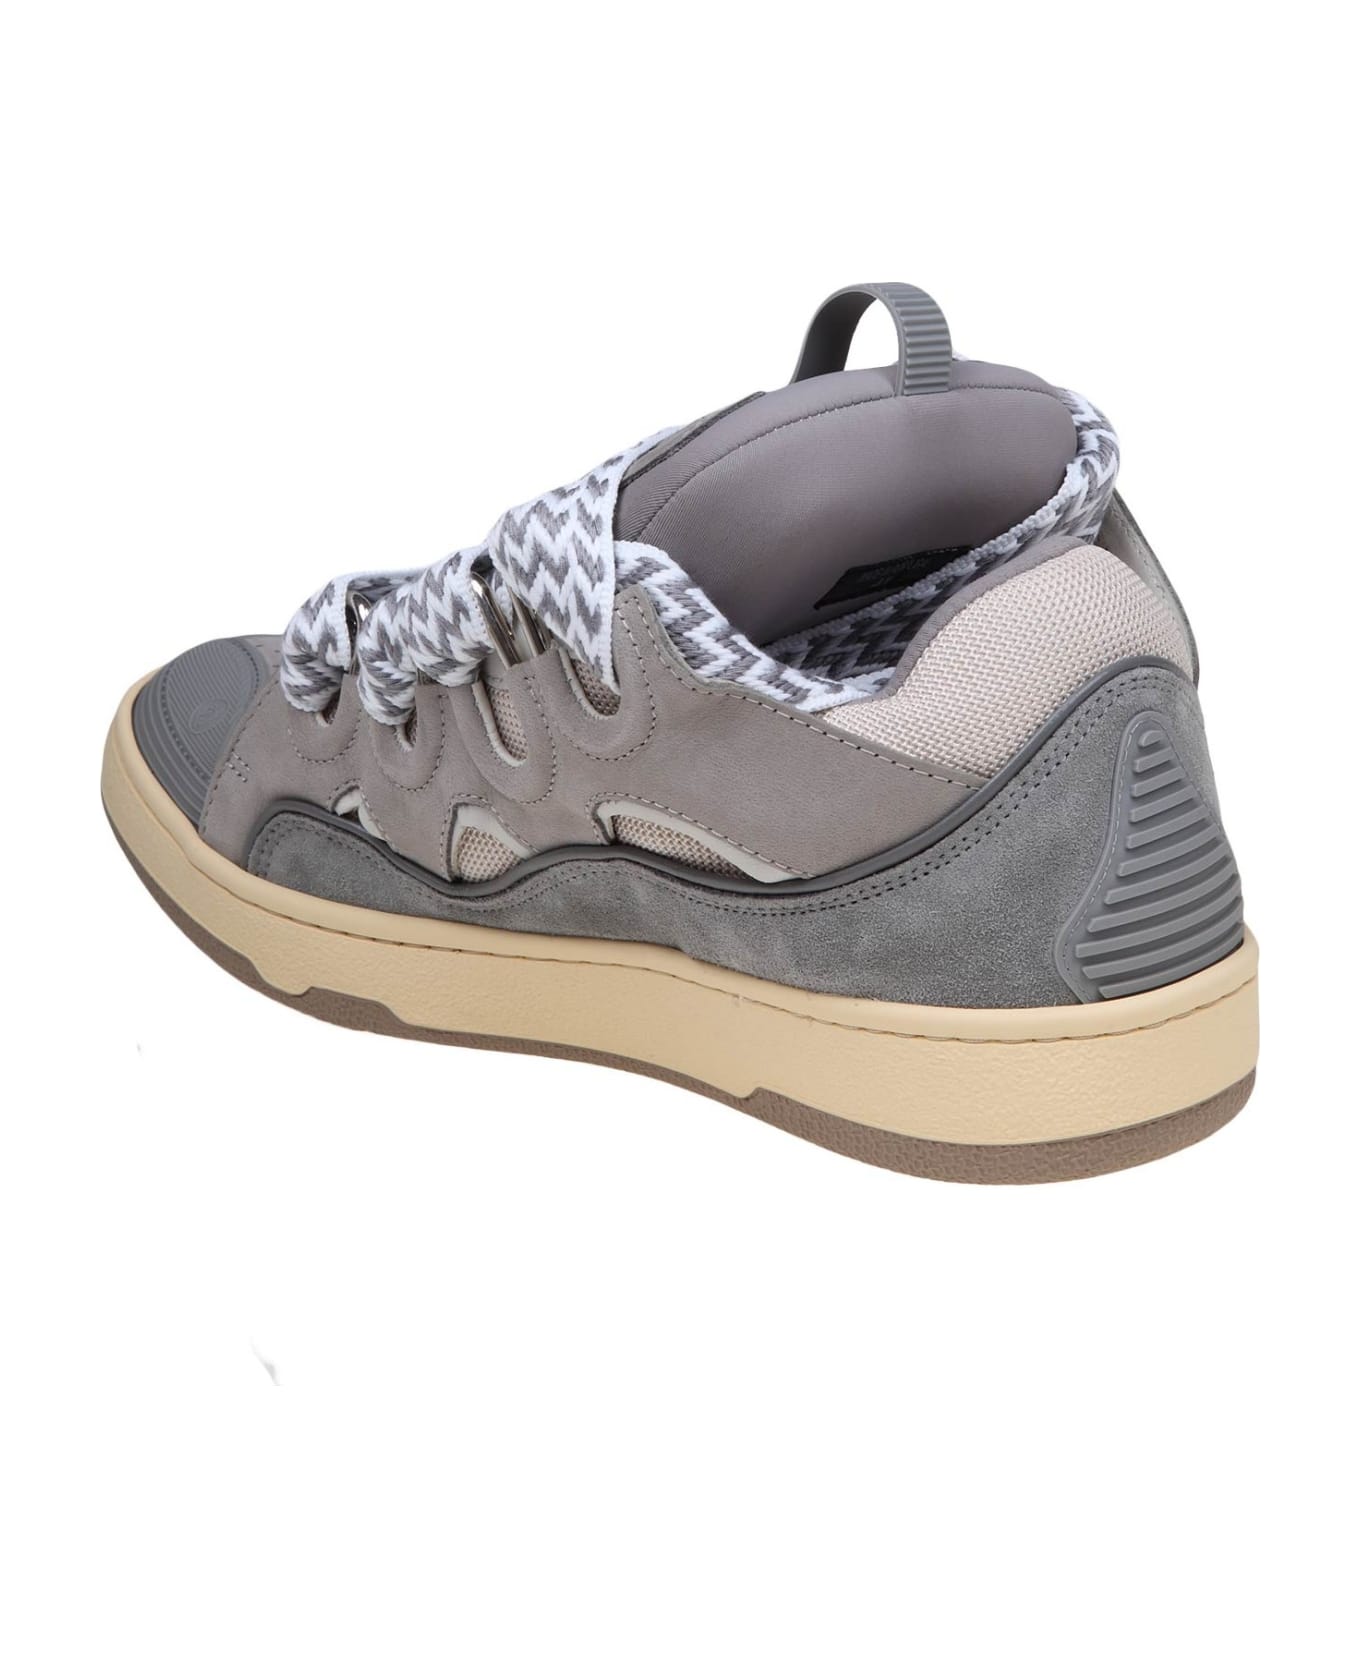 Lanvin Sneakers Curb In Pelle E Camoscio Con Lacci Multicolore - GREY